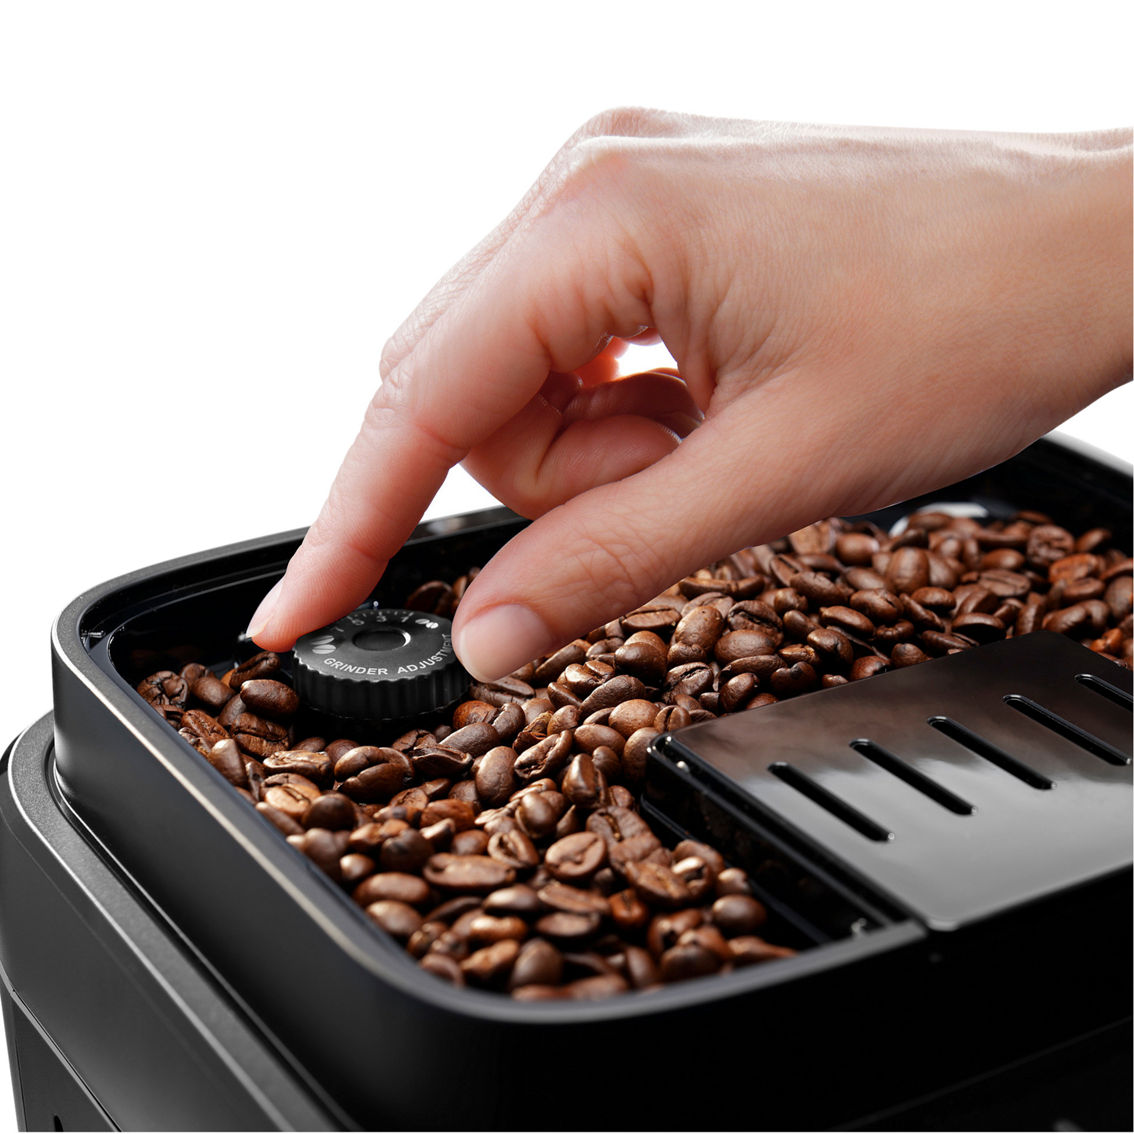 De'Longhi Magnifica Evo Coffee and Espresso Machine - Image 5 of 5